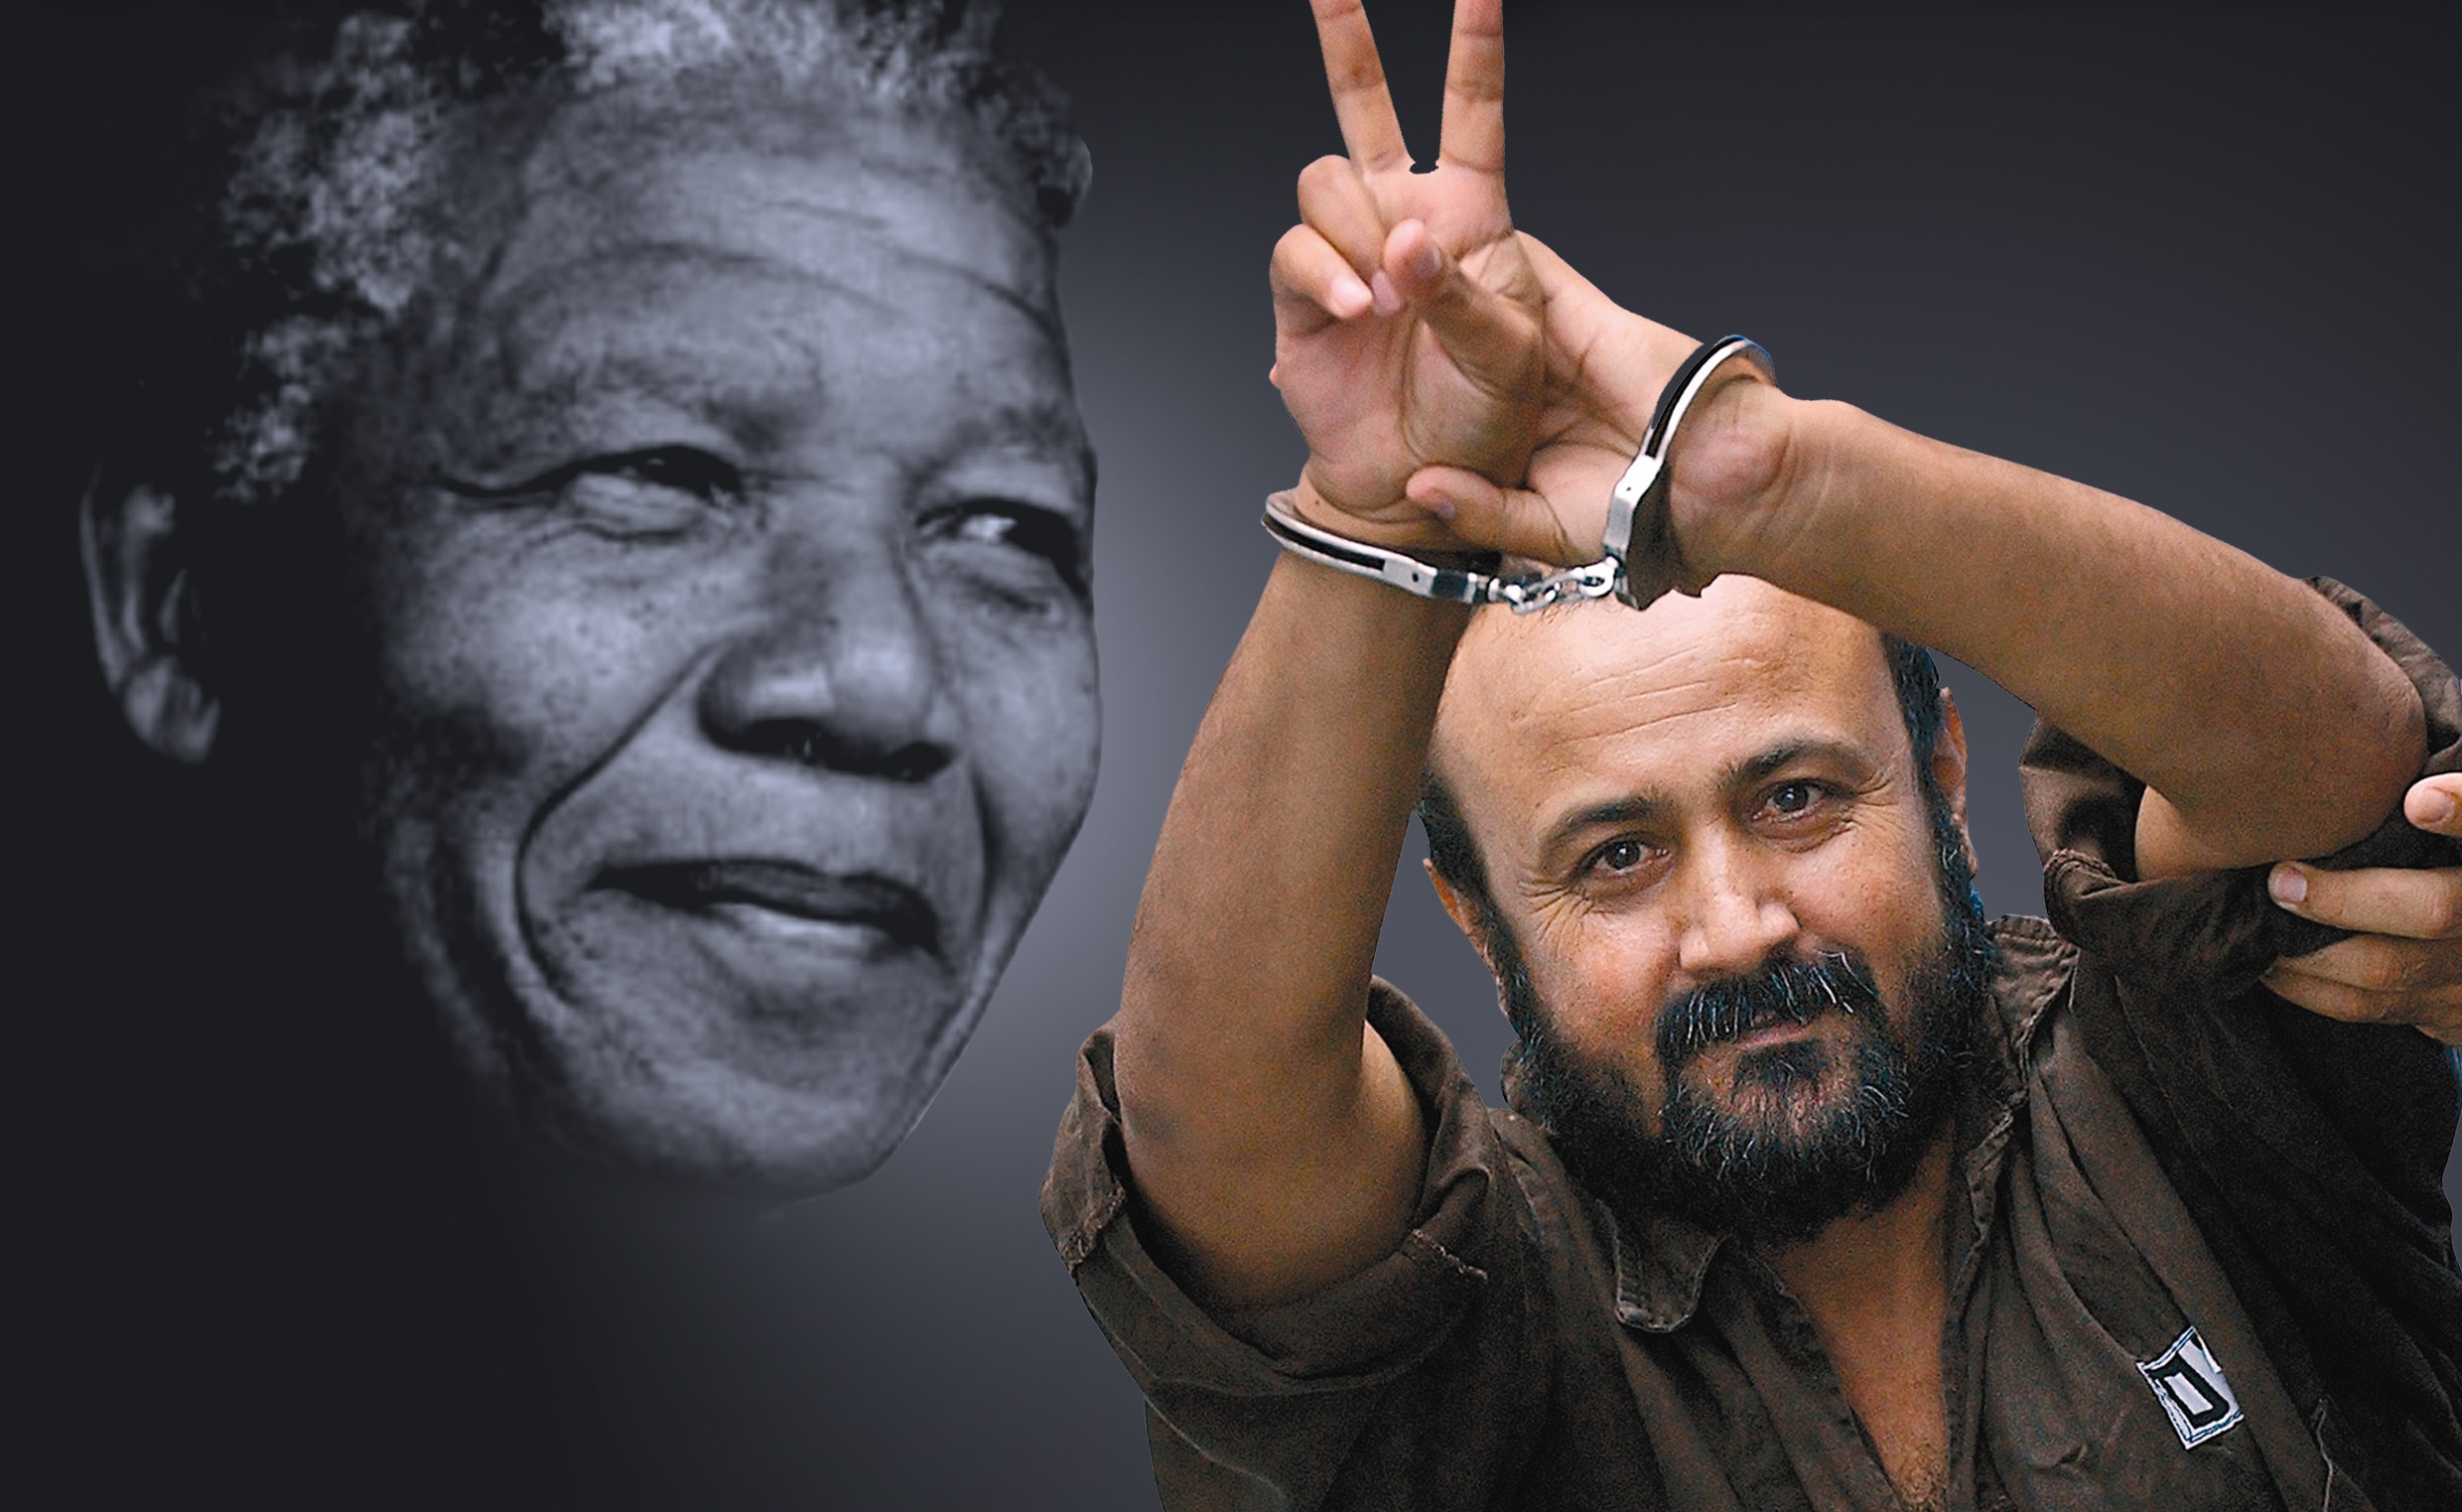 Campagna internazionale per la liberazione di Marwan Barghouti e di tutti i prigionieri palestinesi